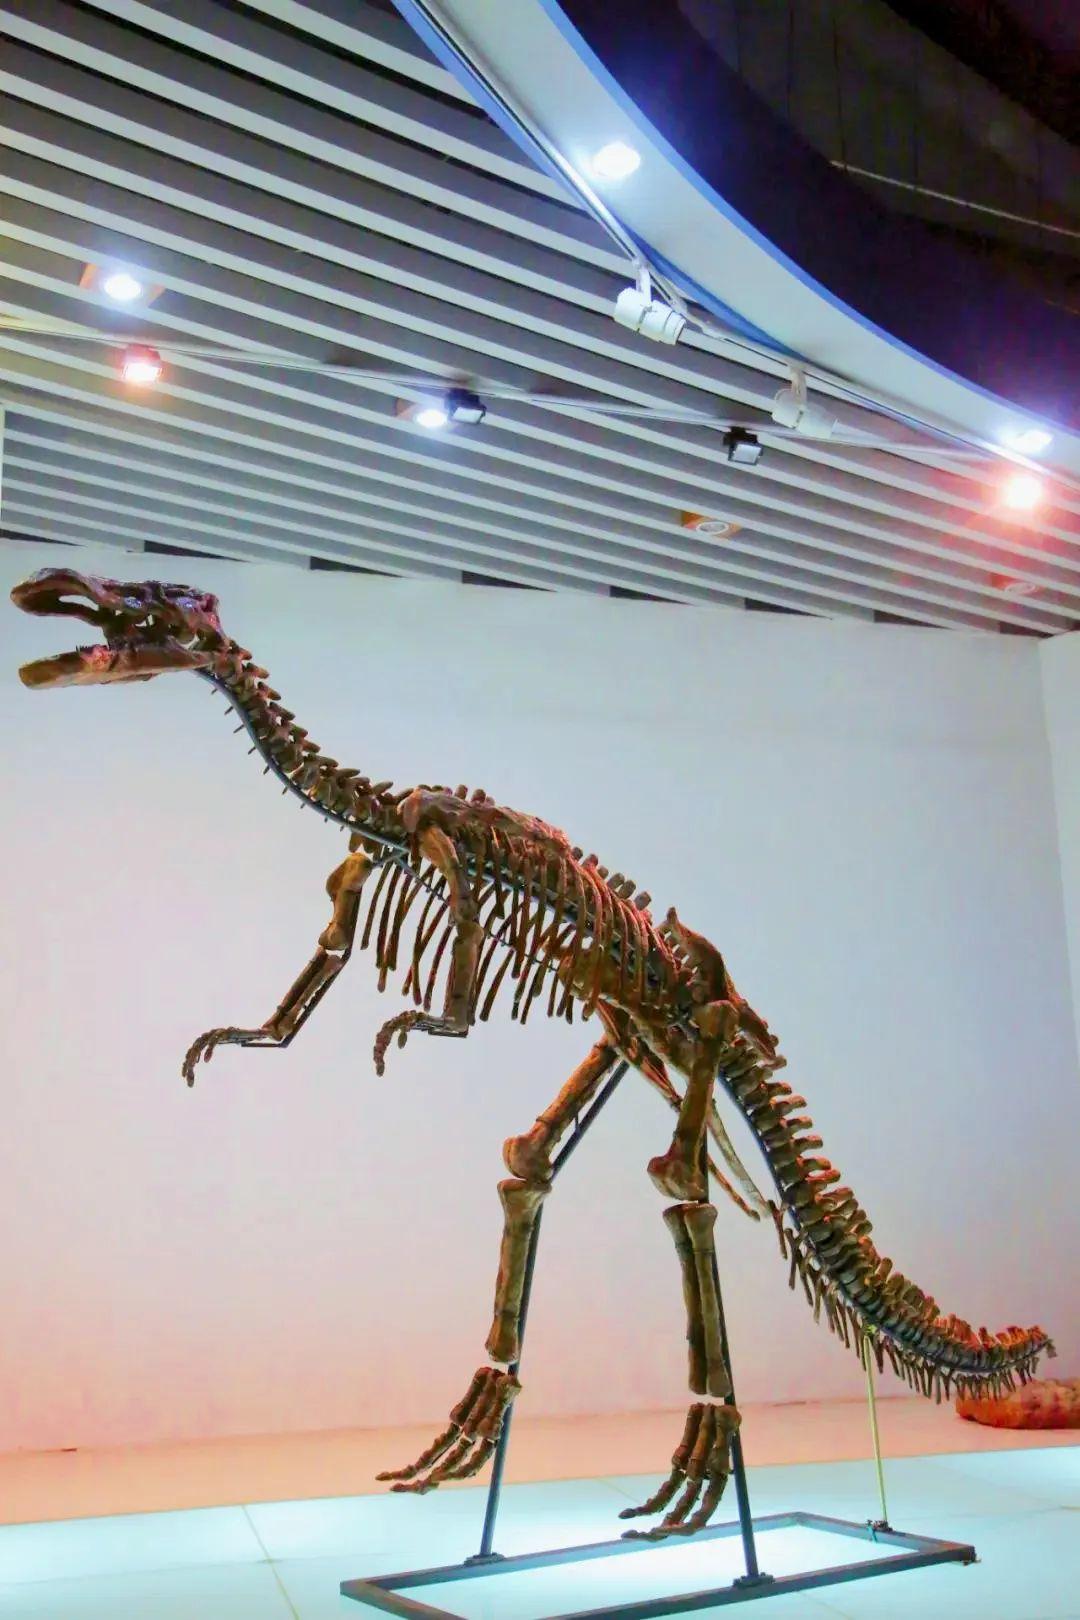 最完整的棘鼻恐龙化石骨架于烟台莱阳被发现)摇头摆尾,发出阵阵吼声